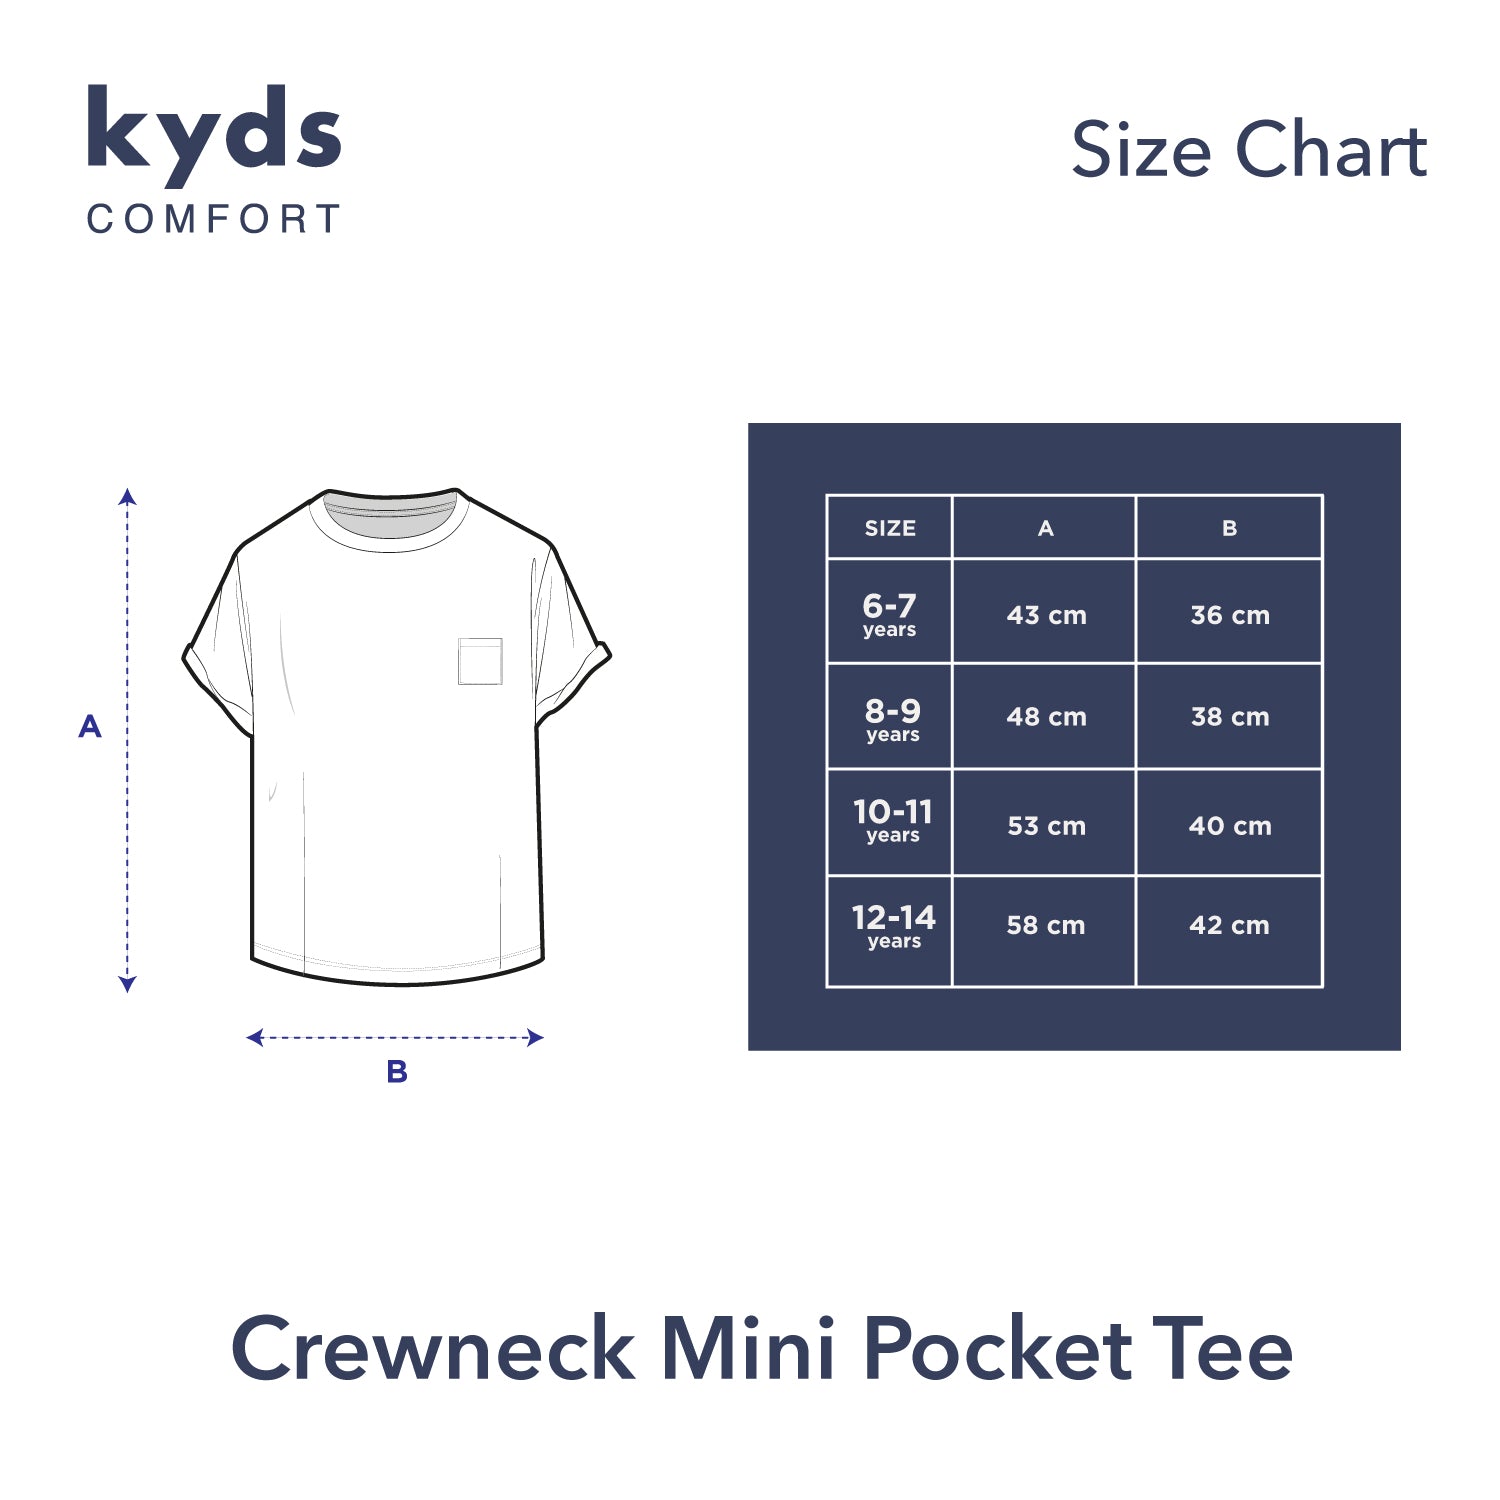 Crewneck Mini Pocket Tee